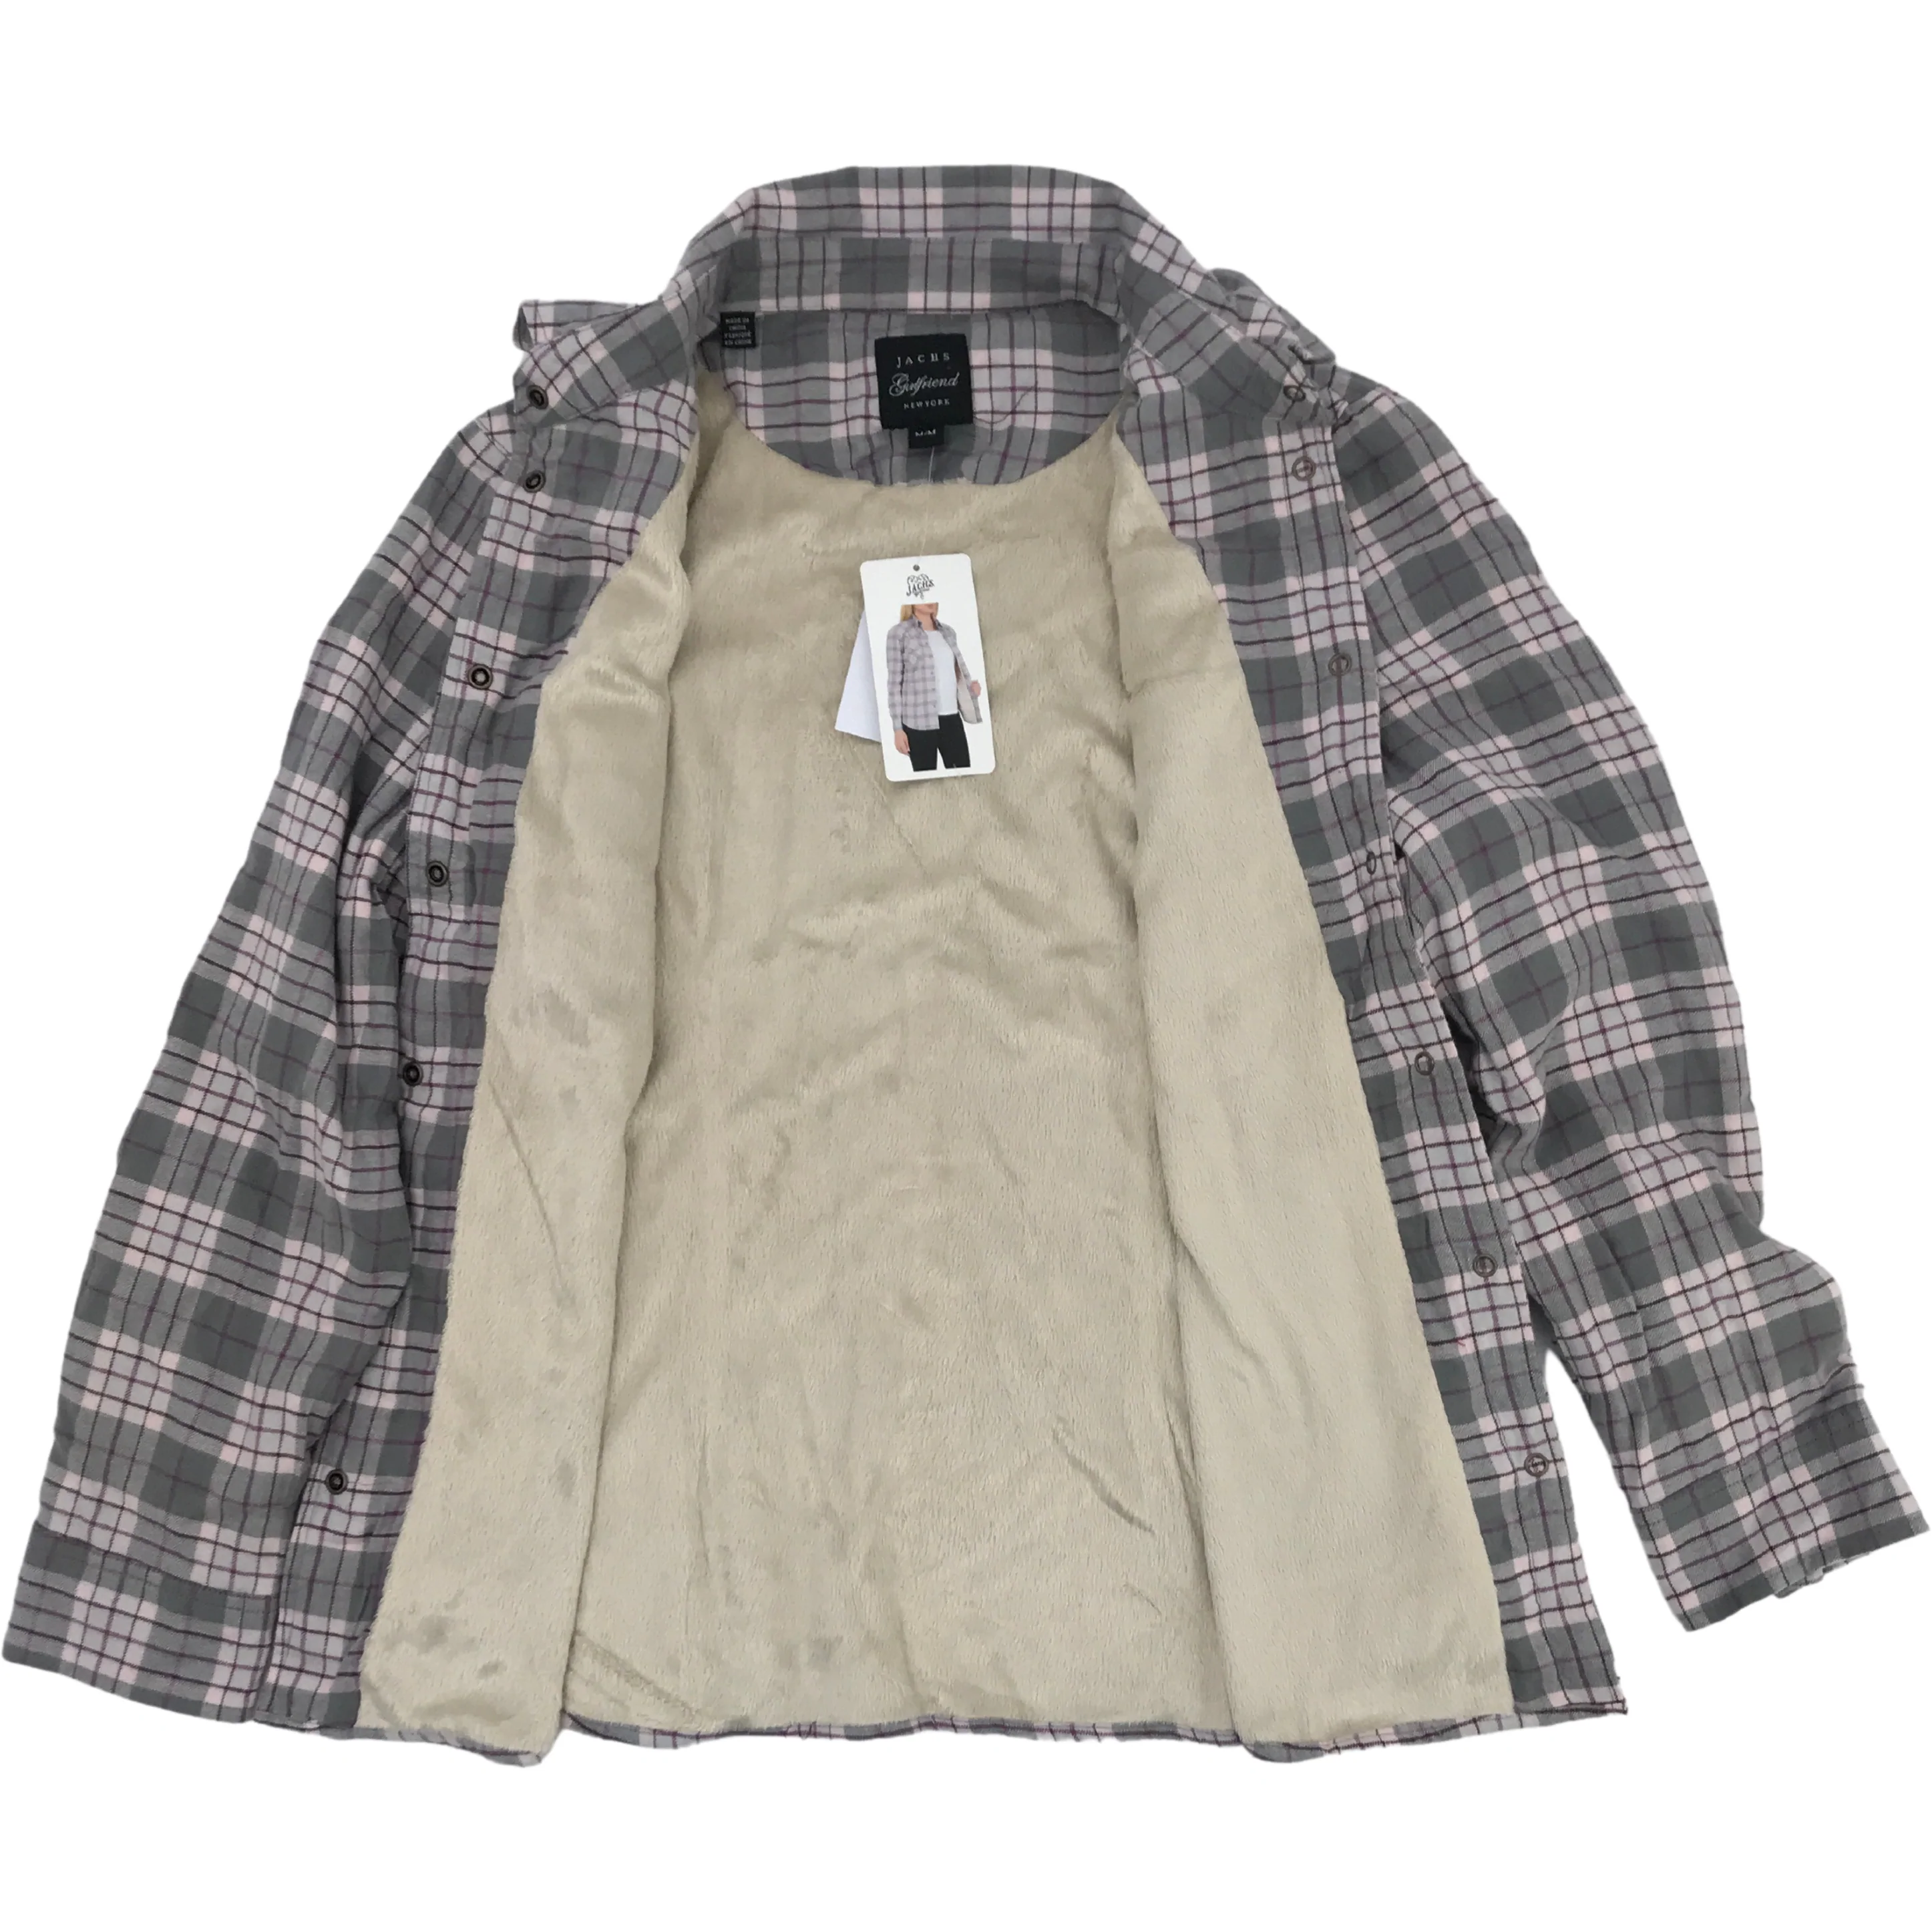 Jachs Girlfriend Women’s Button-Up Shirt / Purple Grey Plaid / Medium